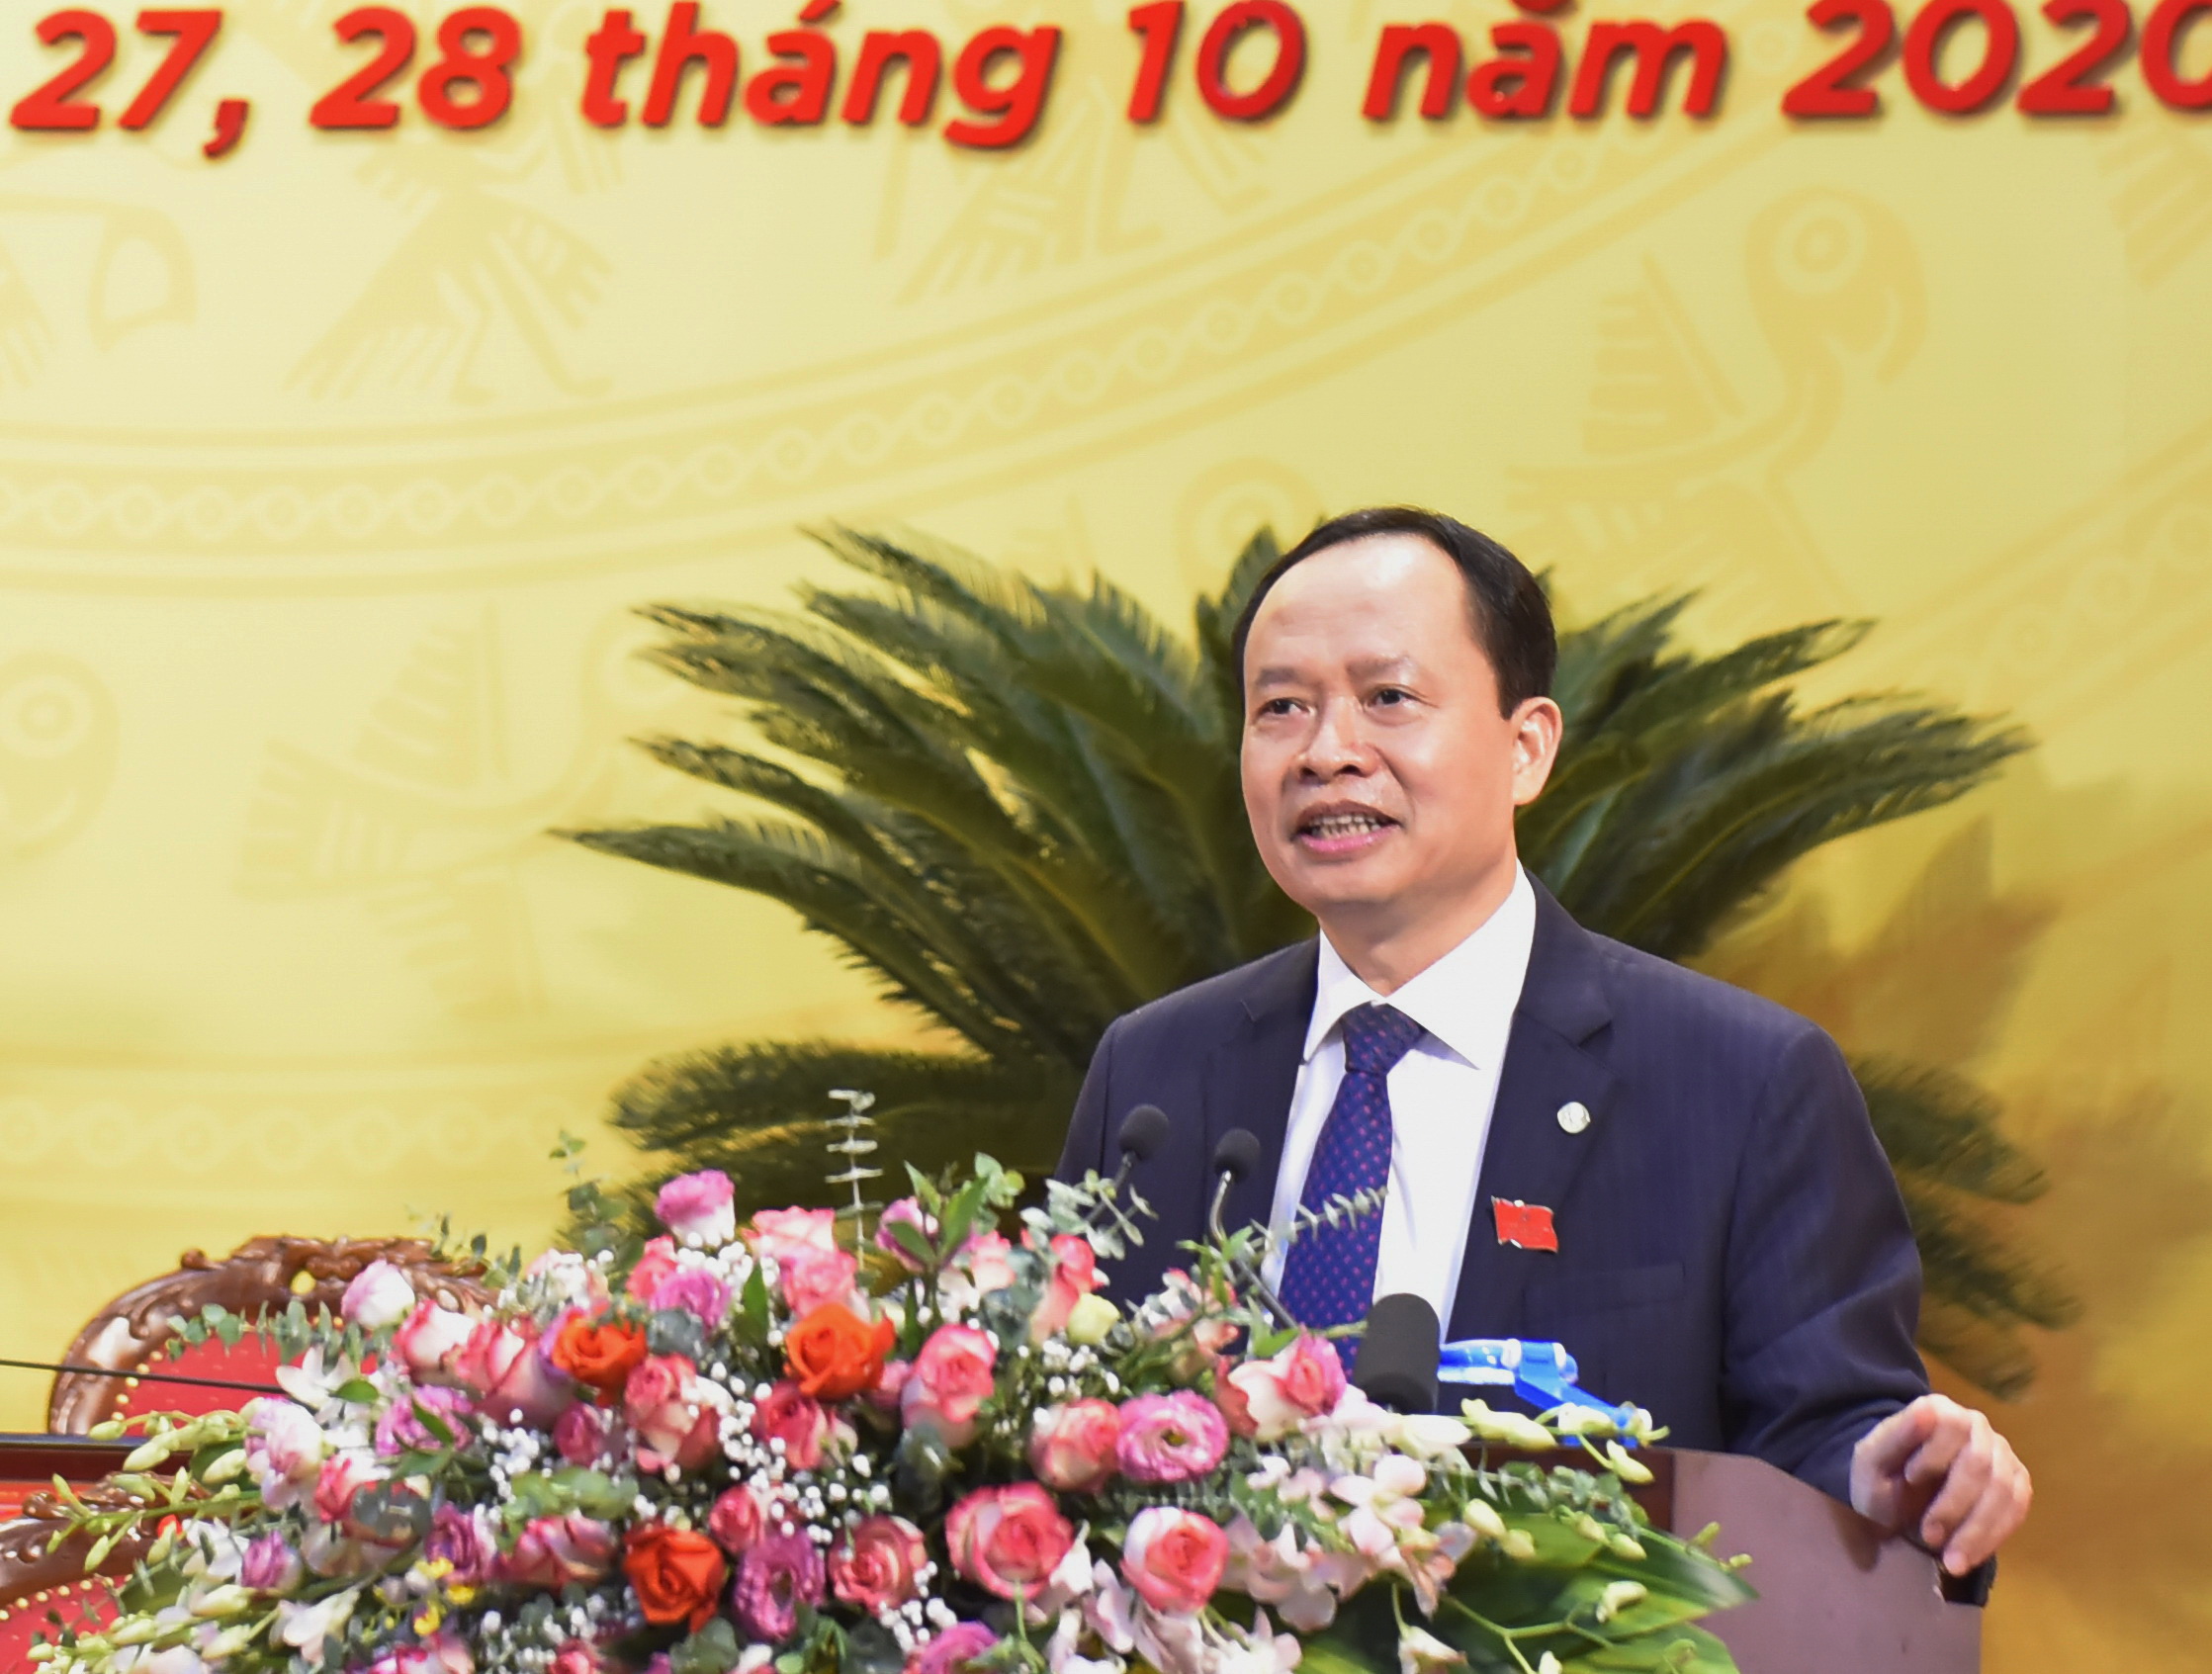 Ông Trịnh Văn Chiến, Bí thư Tỉnh ủy Thanh Hóa phát biều tại Đại hội